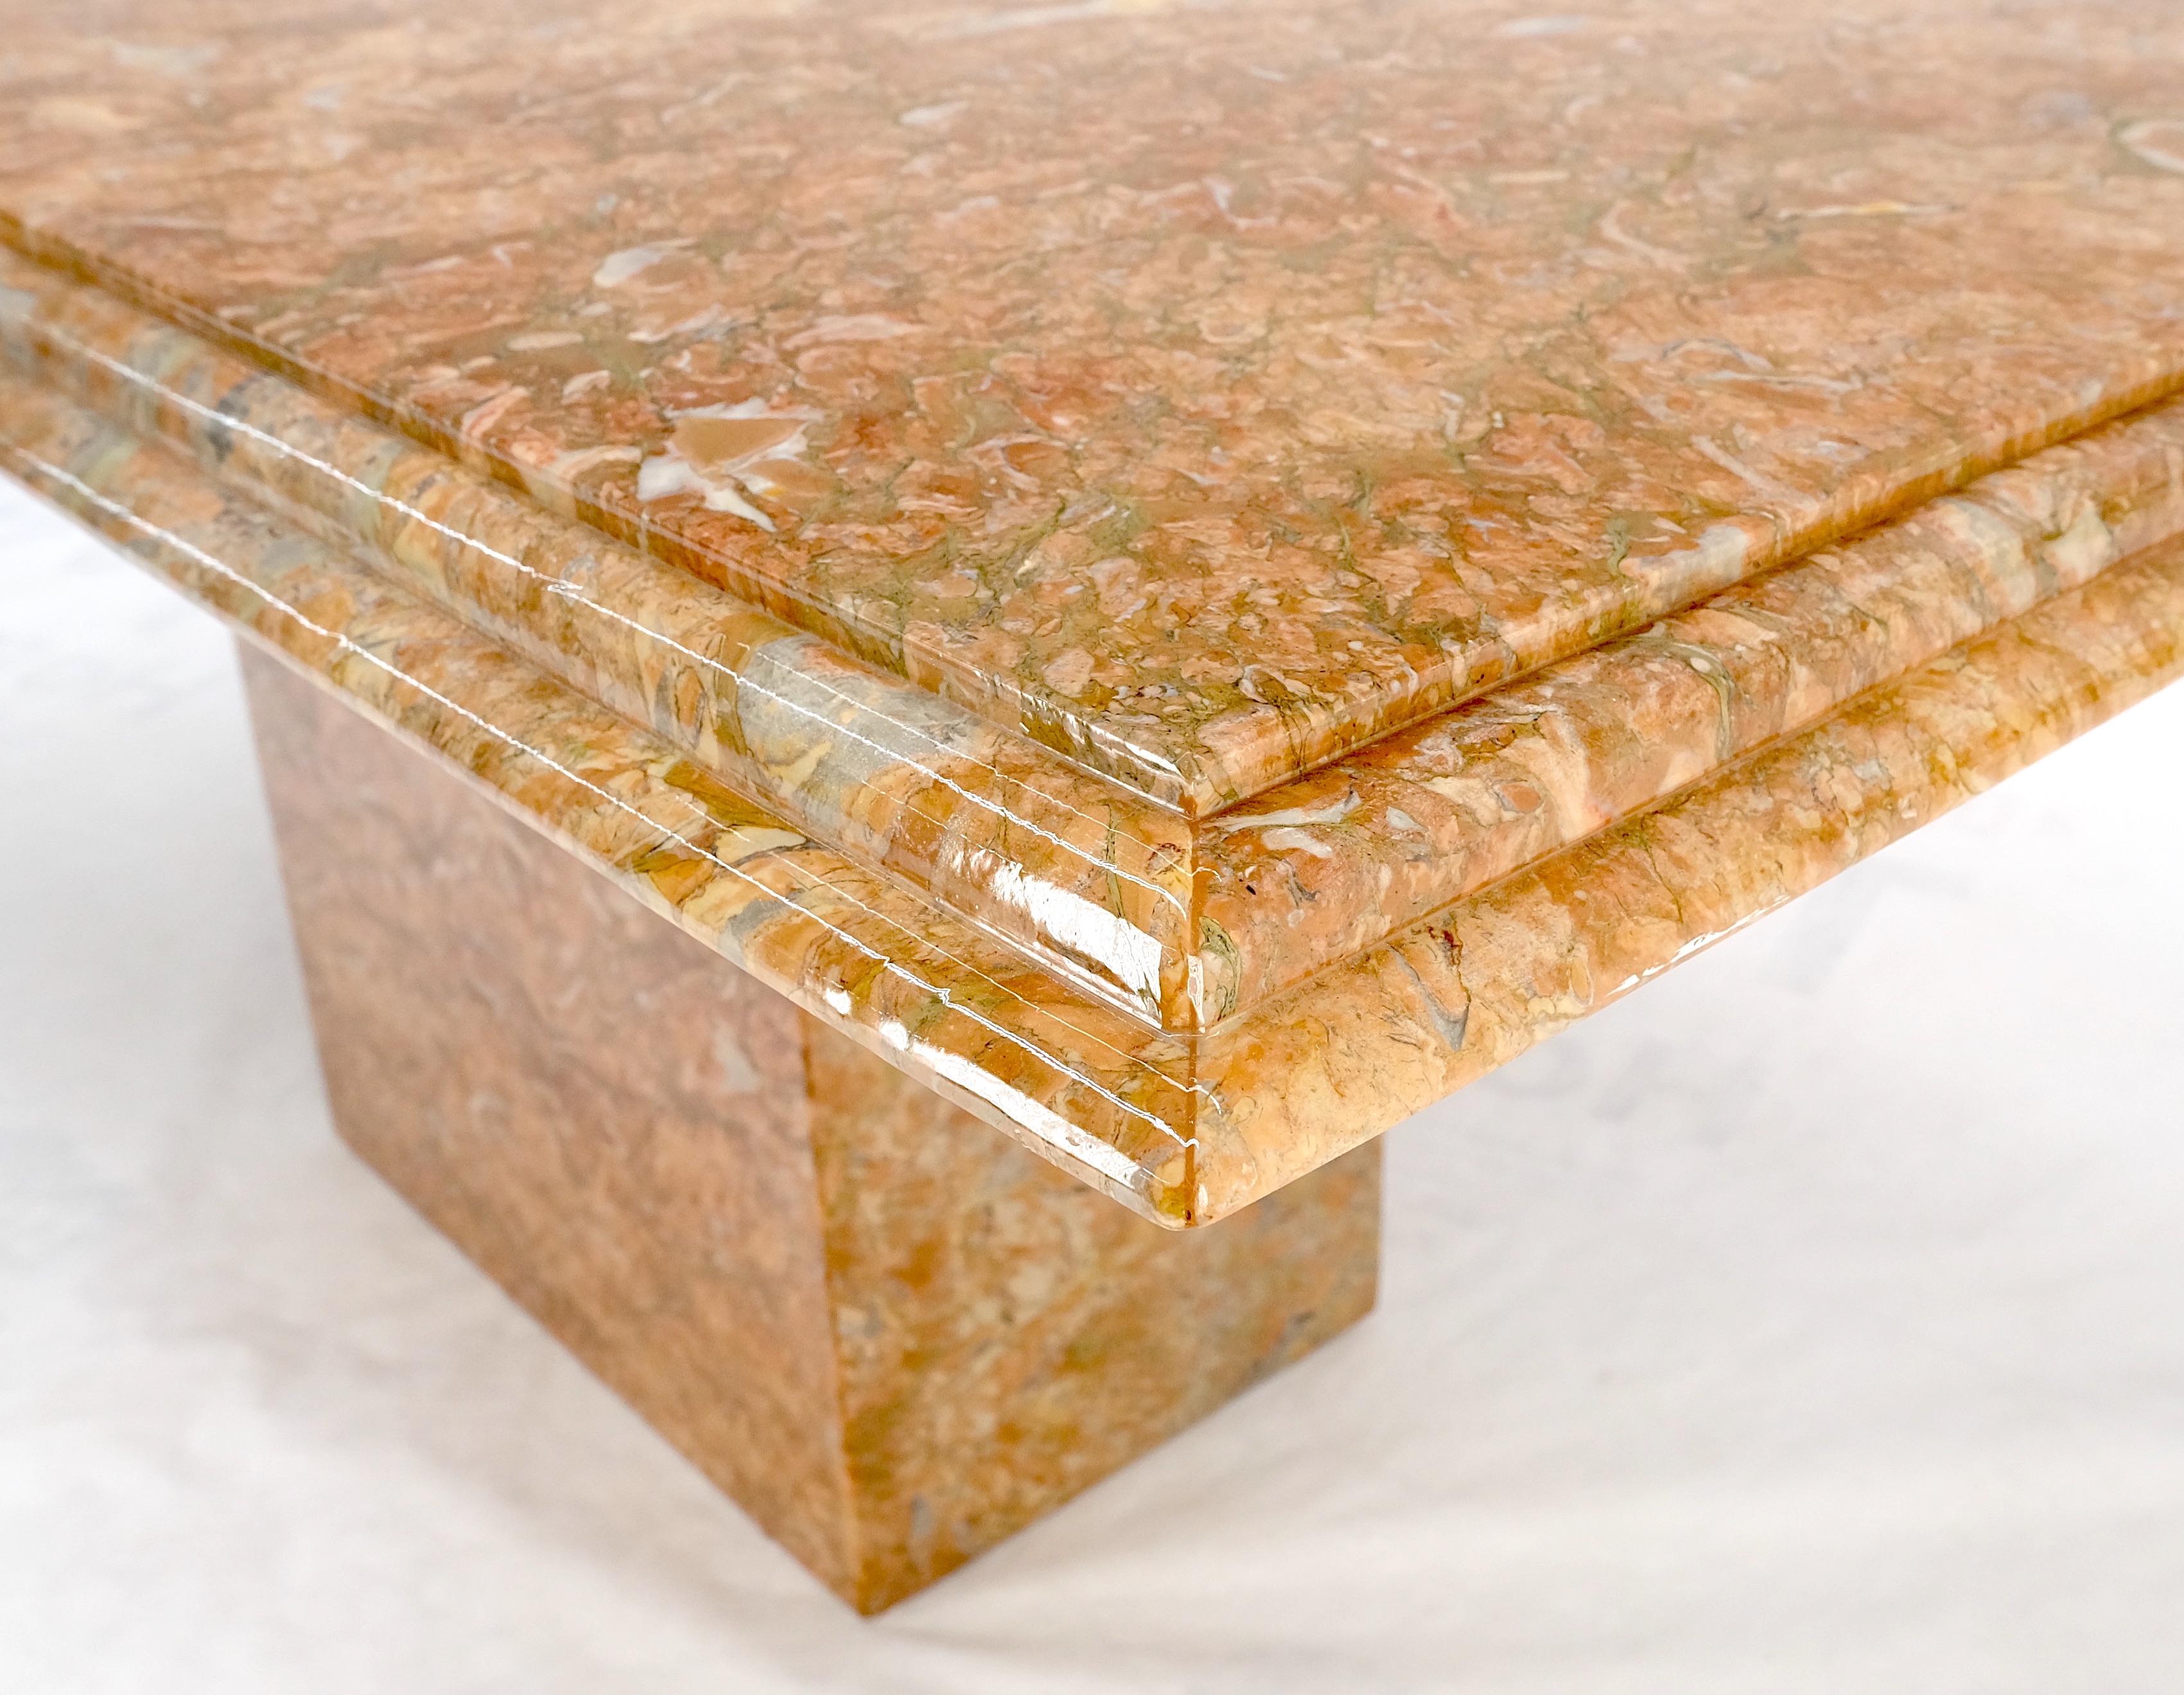 Table de conférence en marbre italien à un seul pied, couleur brique, menthe ! table de conférence en marbre italien à un seul pied, couleur brique, menthe !